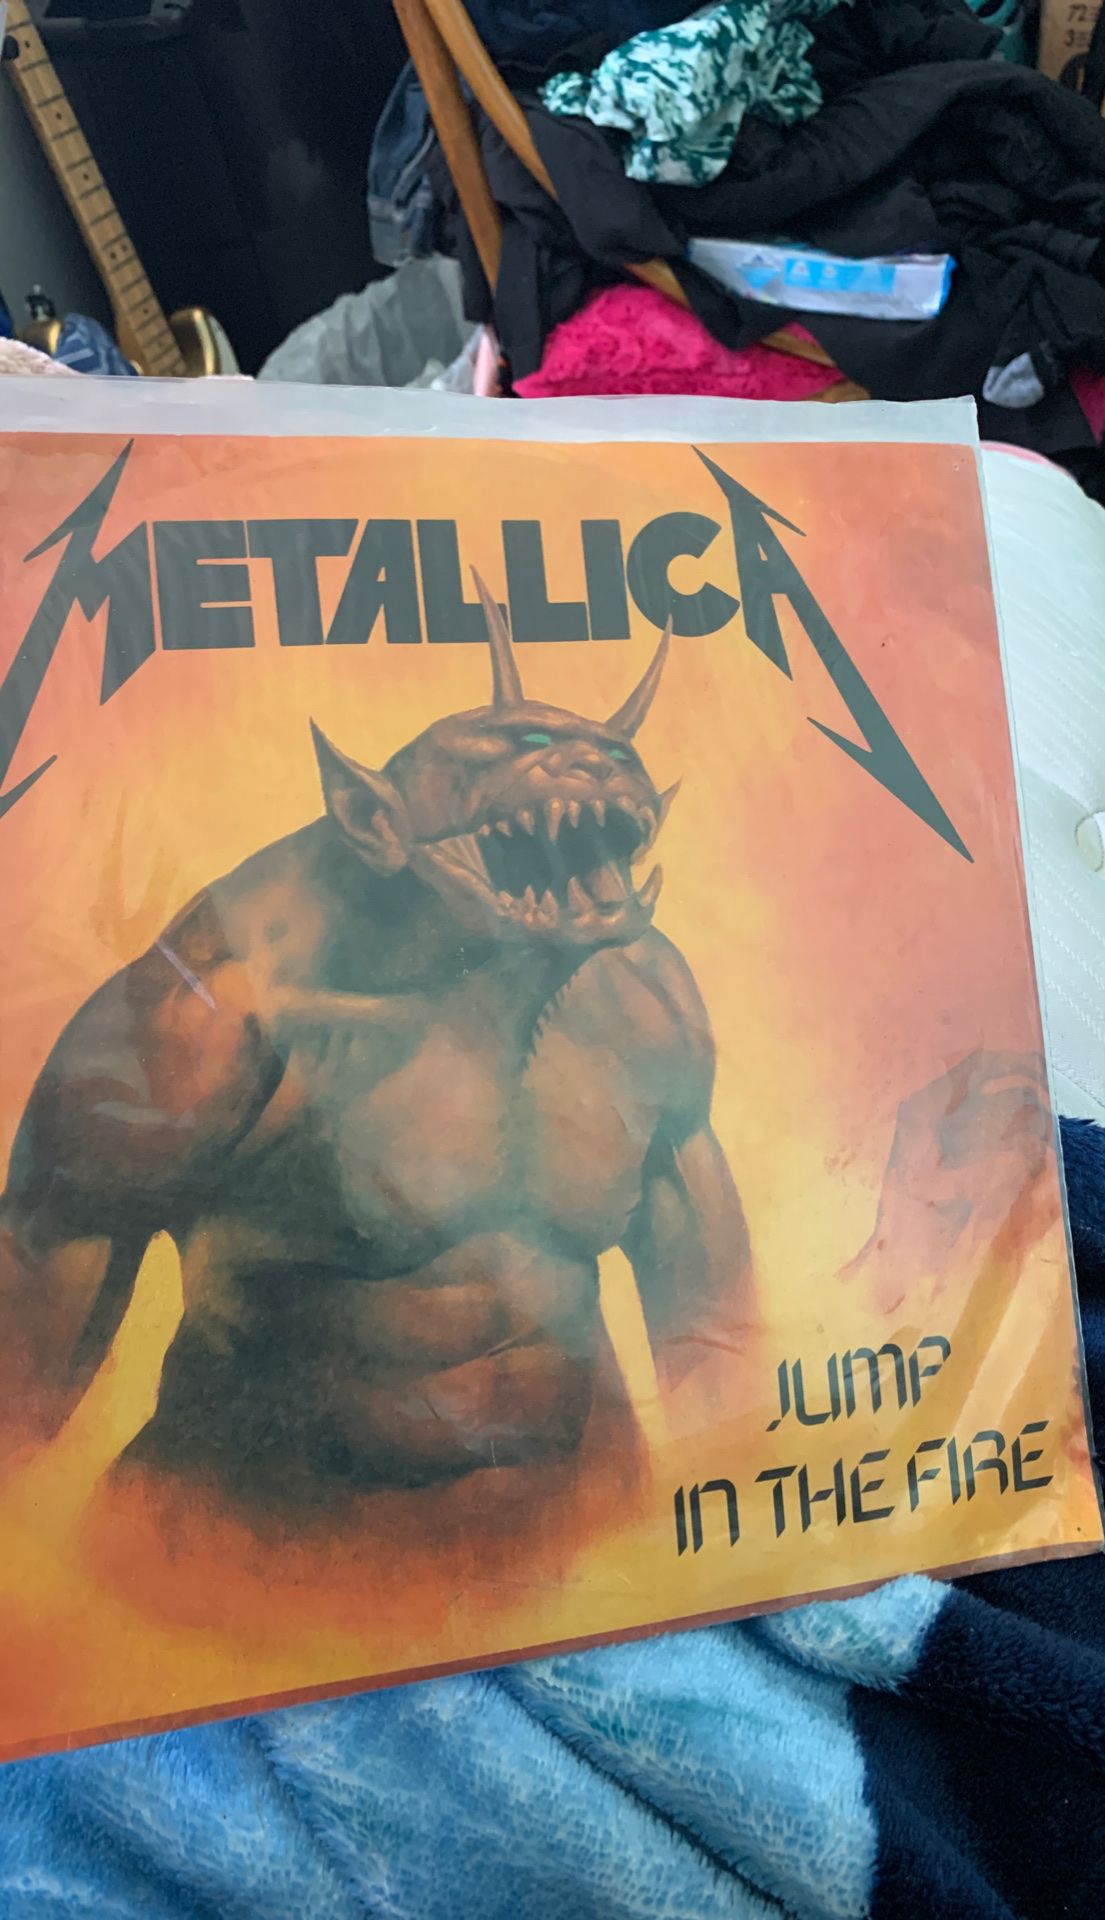 Metallica Jump in the fire original EP